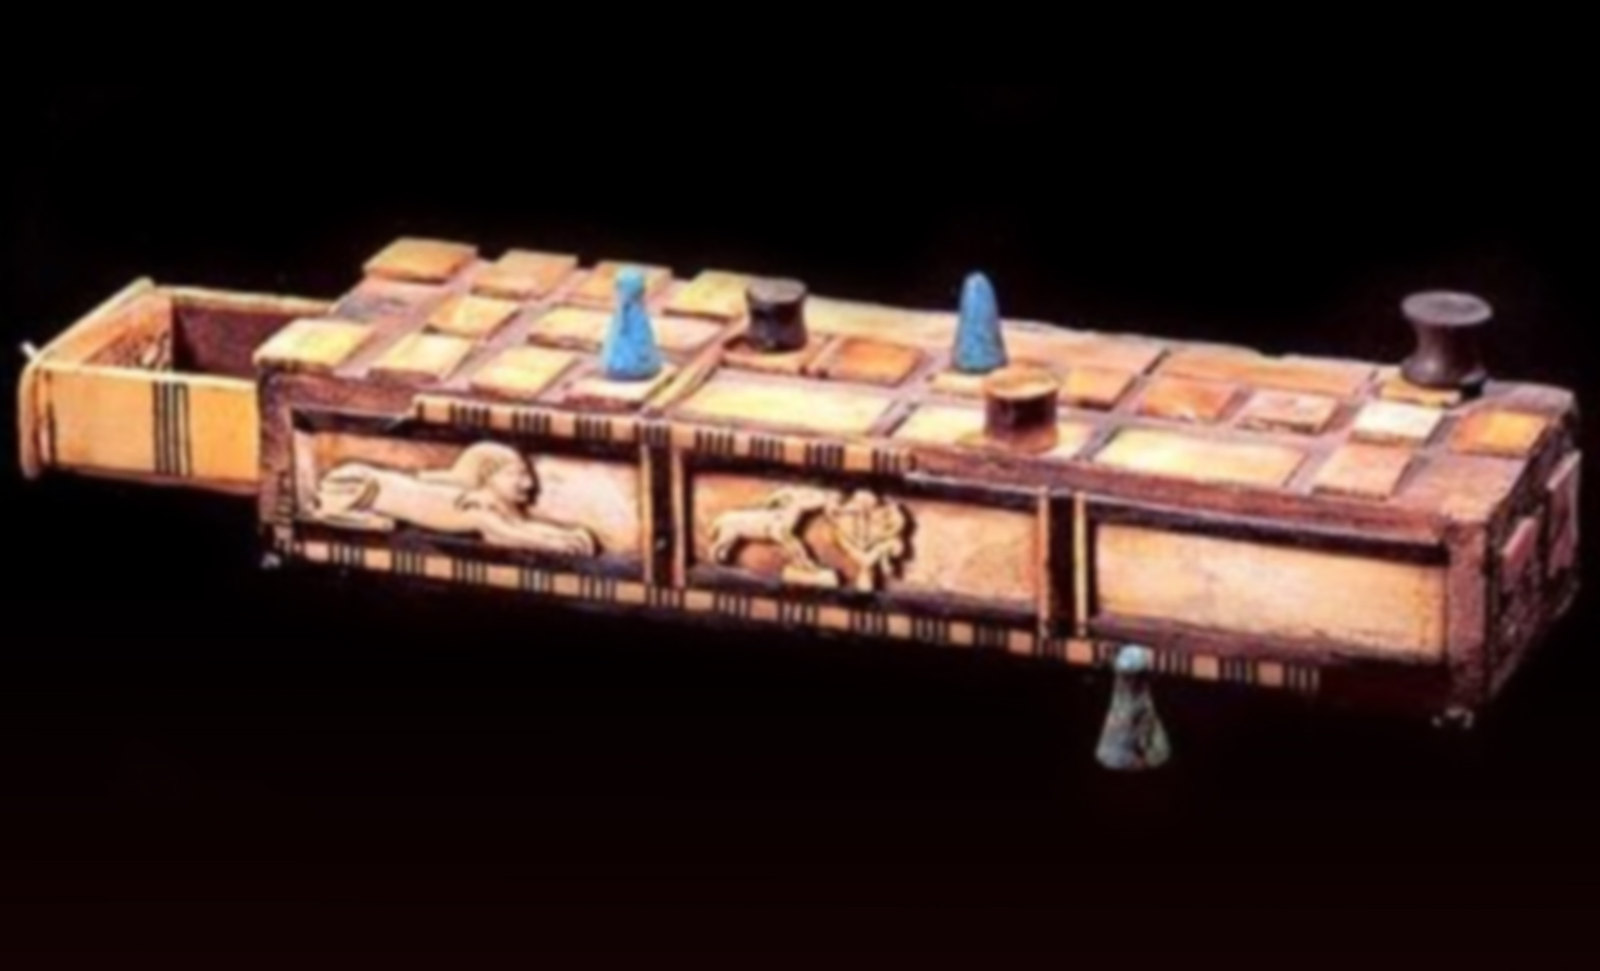 Senet - Lujoso sistema de objetos lúdicos obsequio del dios Toht a la faraona Nefertari